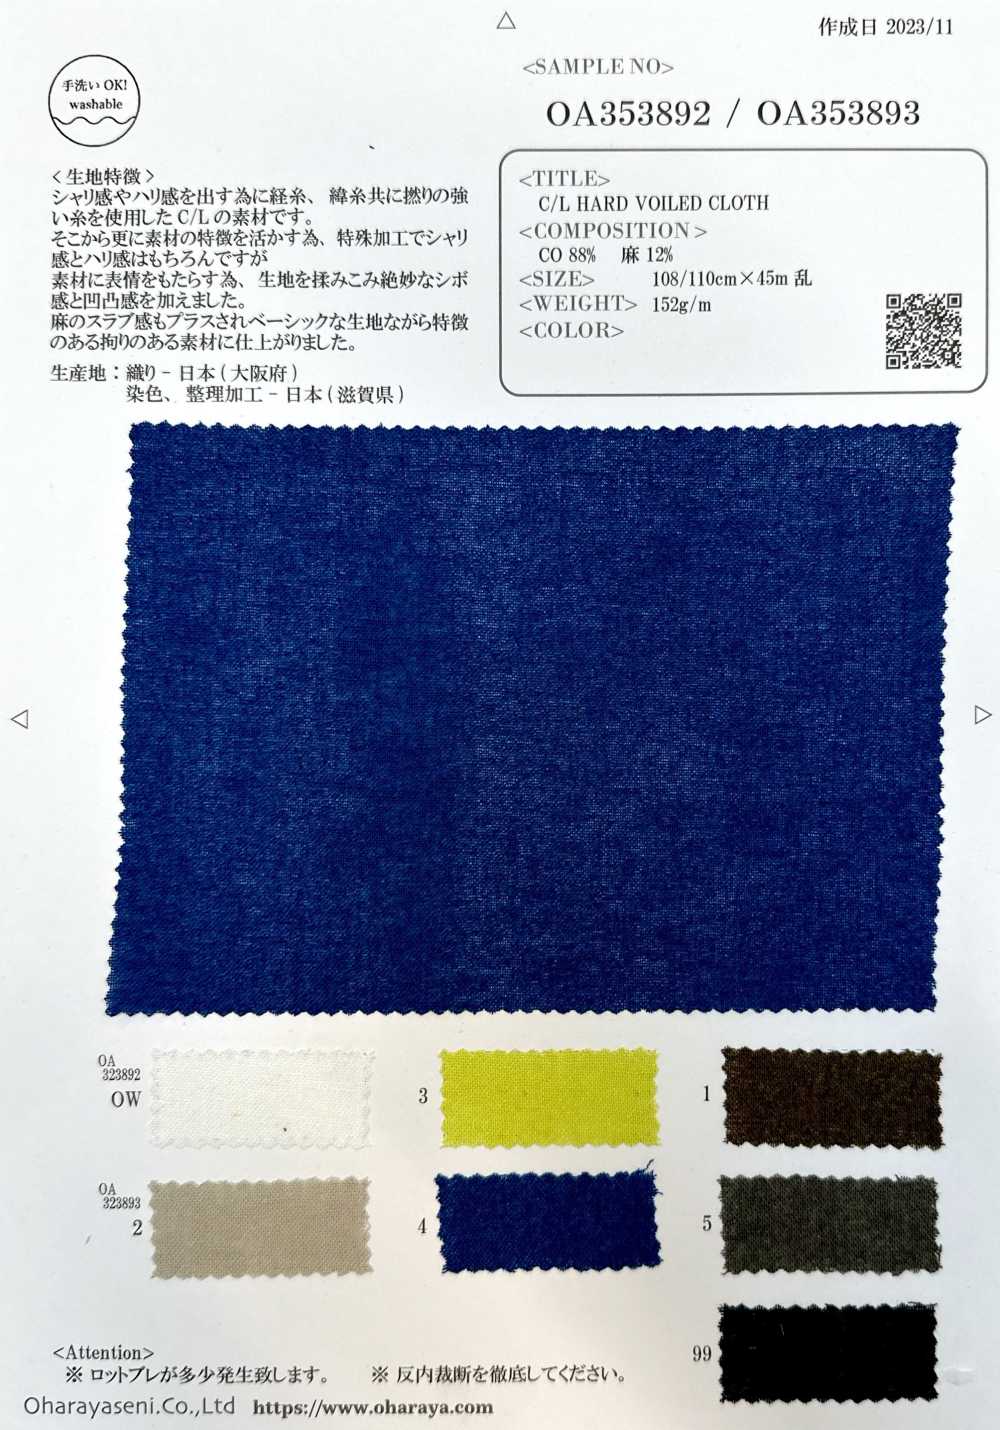 OA353893 C/L 硬质脏布[面料] 小原屋繊維